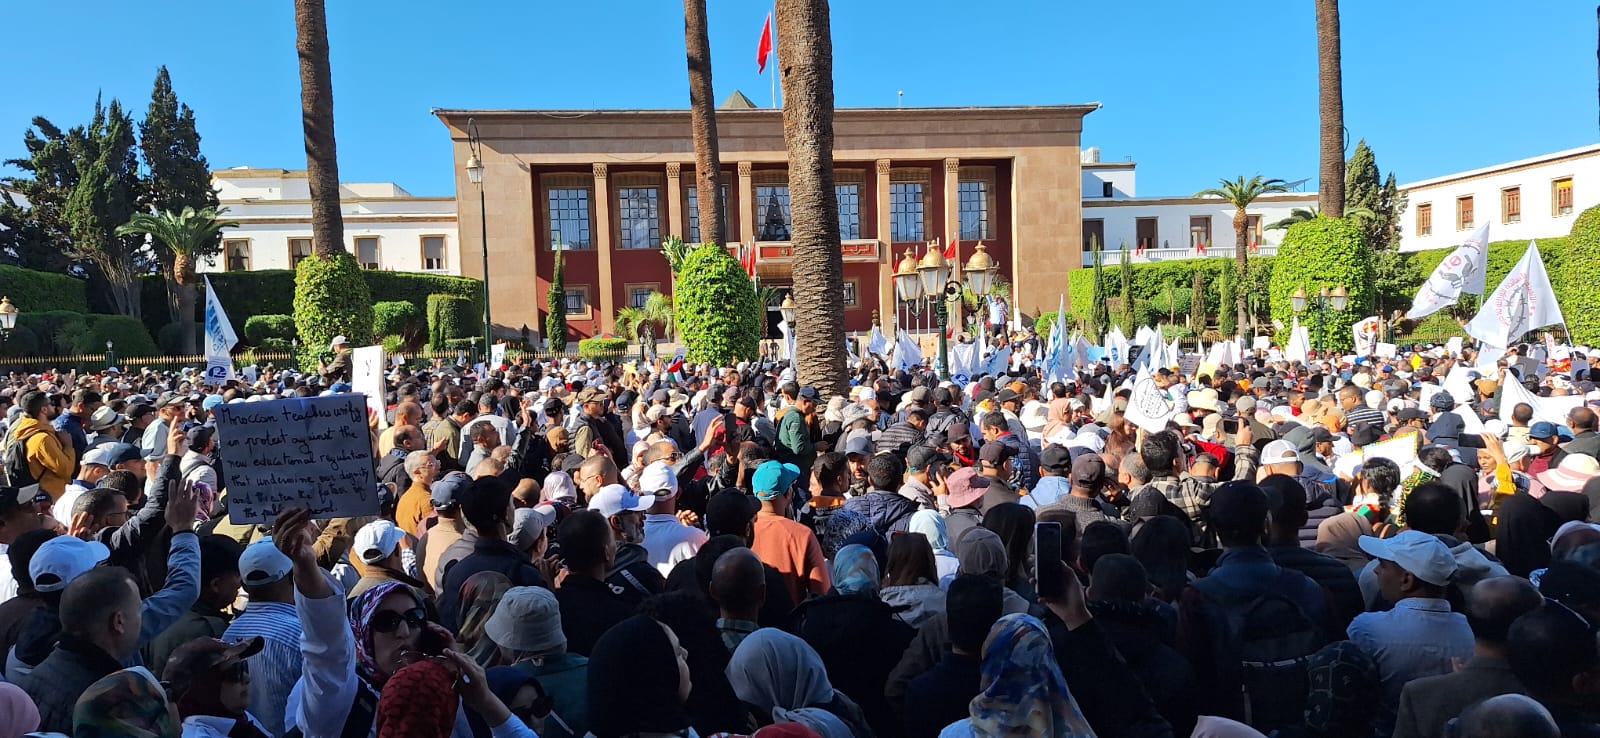 الجمعية المغربية لحقوق الإنسان توجه رسالة مفتوحة إلى الحكومة المغربية بشأن الإحتقان في قطاع التعليم